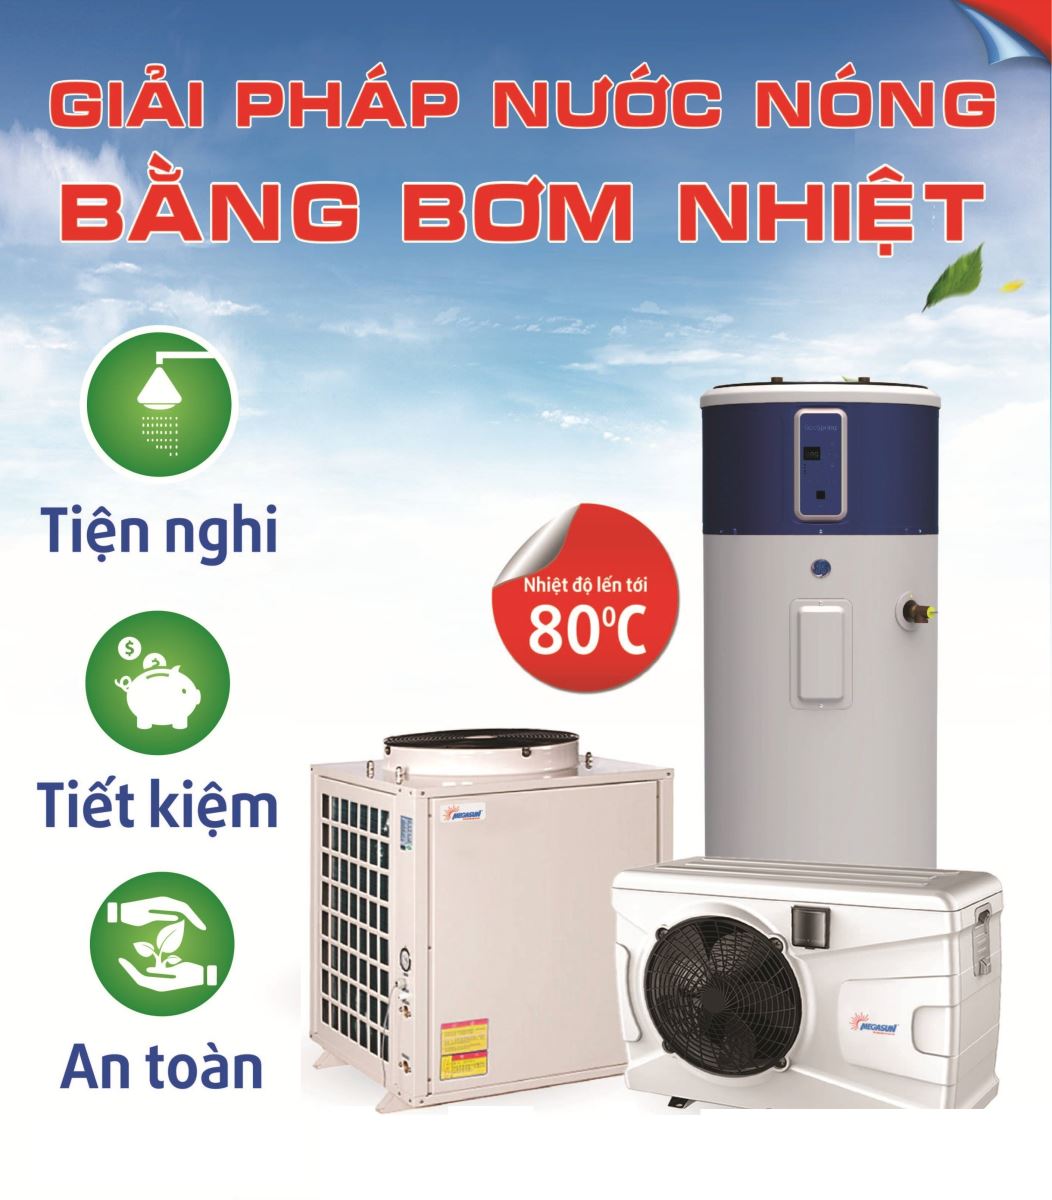 Giải pháp cấp nước nóng cho spa tại Quảng Ninh - Ảnh 2